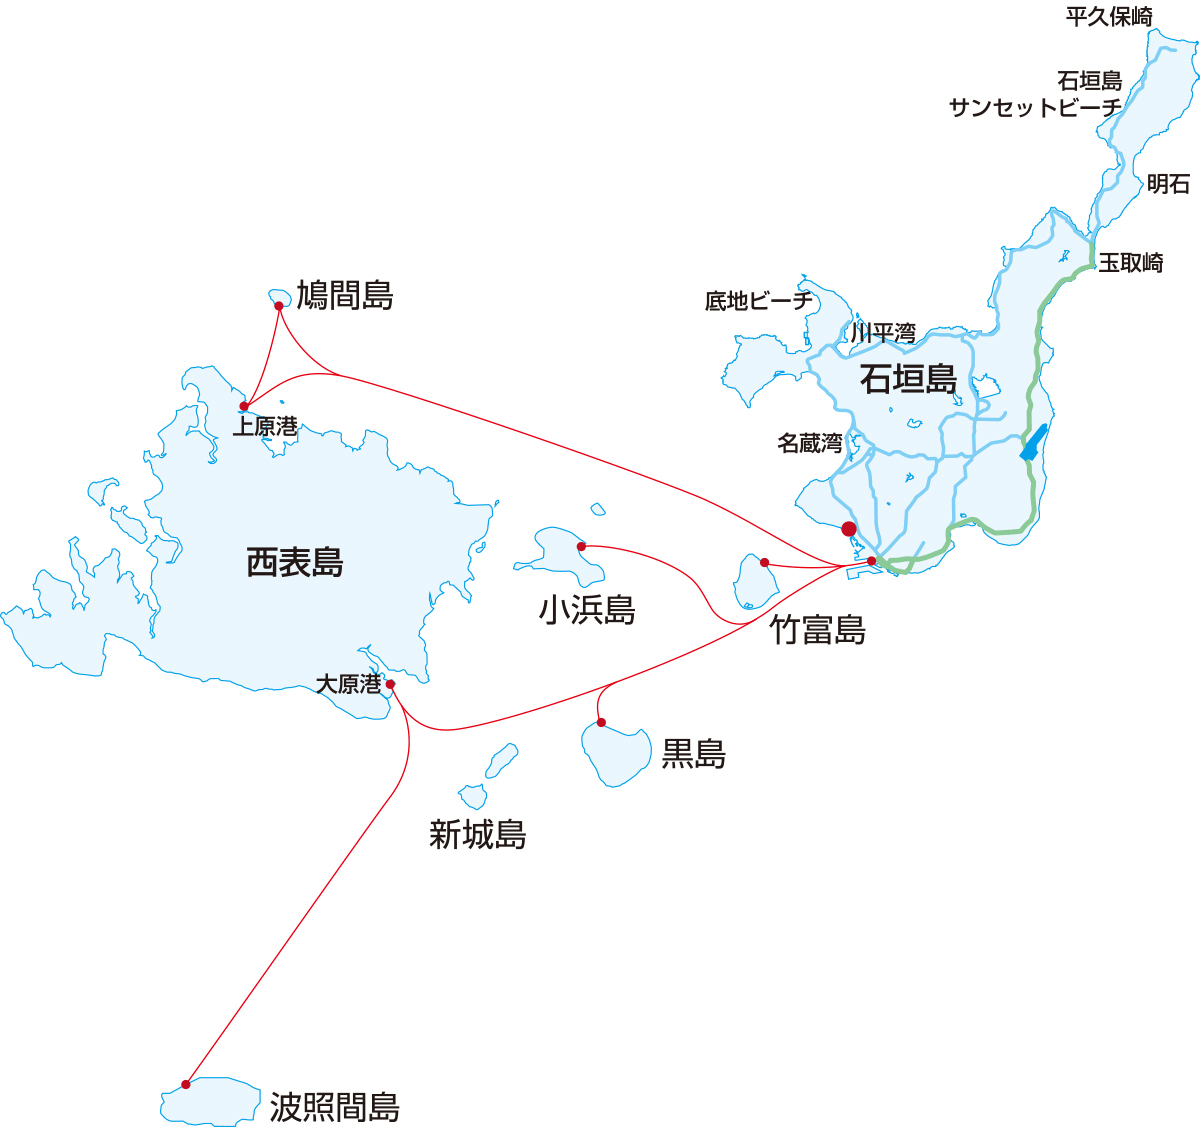 石垣島から八重山の島々へのアクセスの図